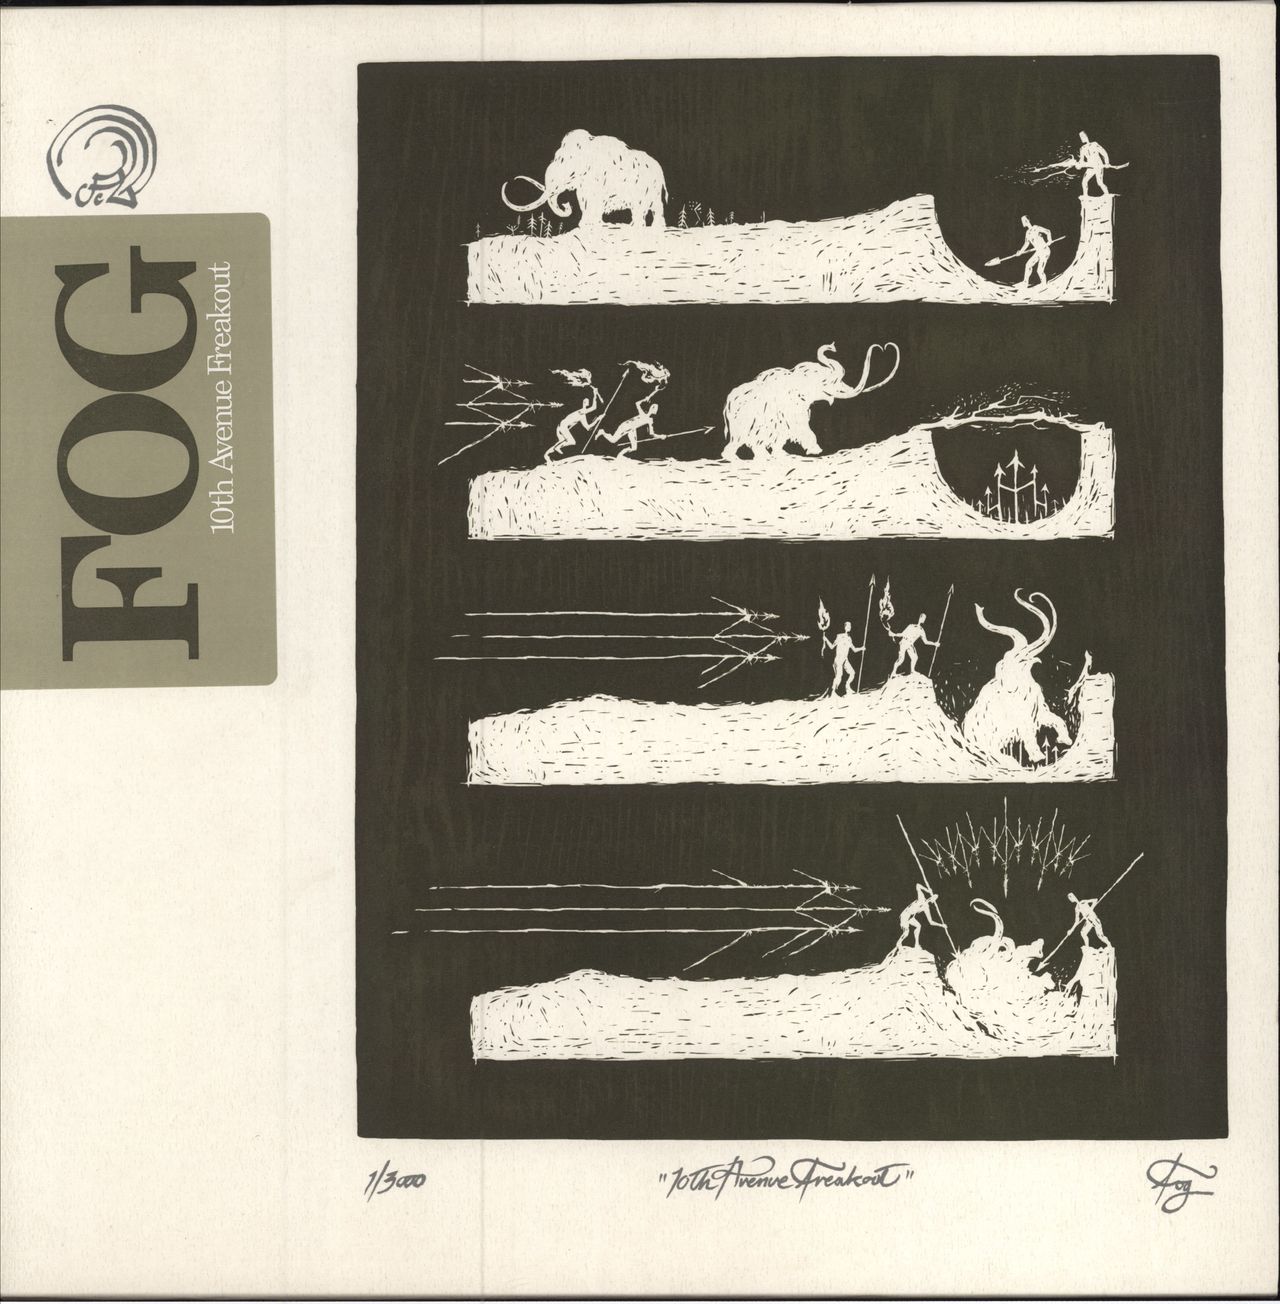 Fog 10th Avenue Freakout UK 2-LP vinyl record set (Double LP Album) LEX033LP